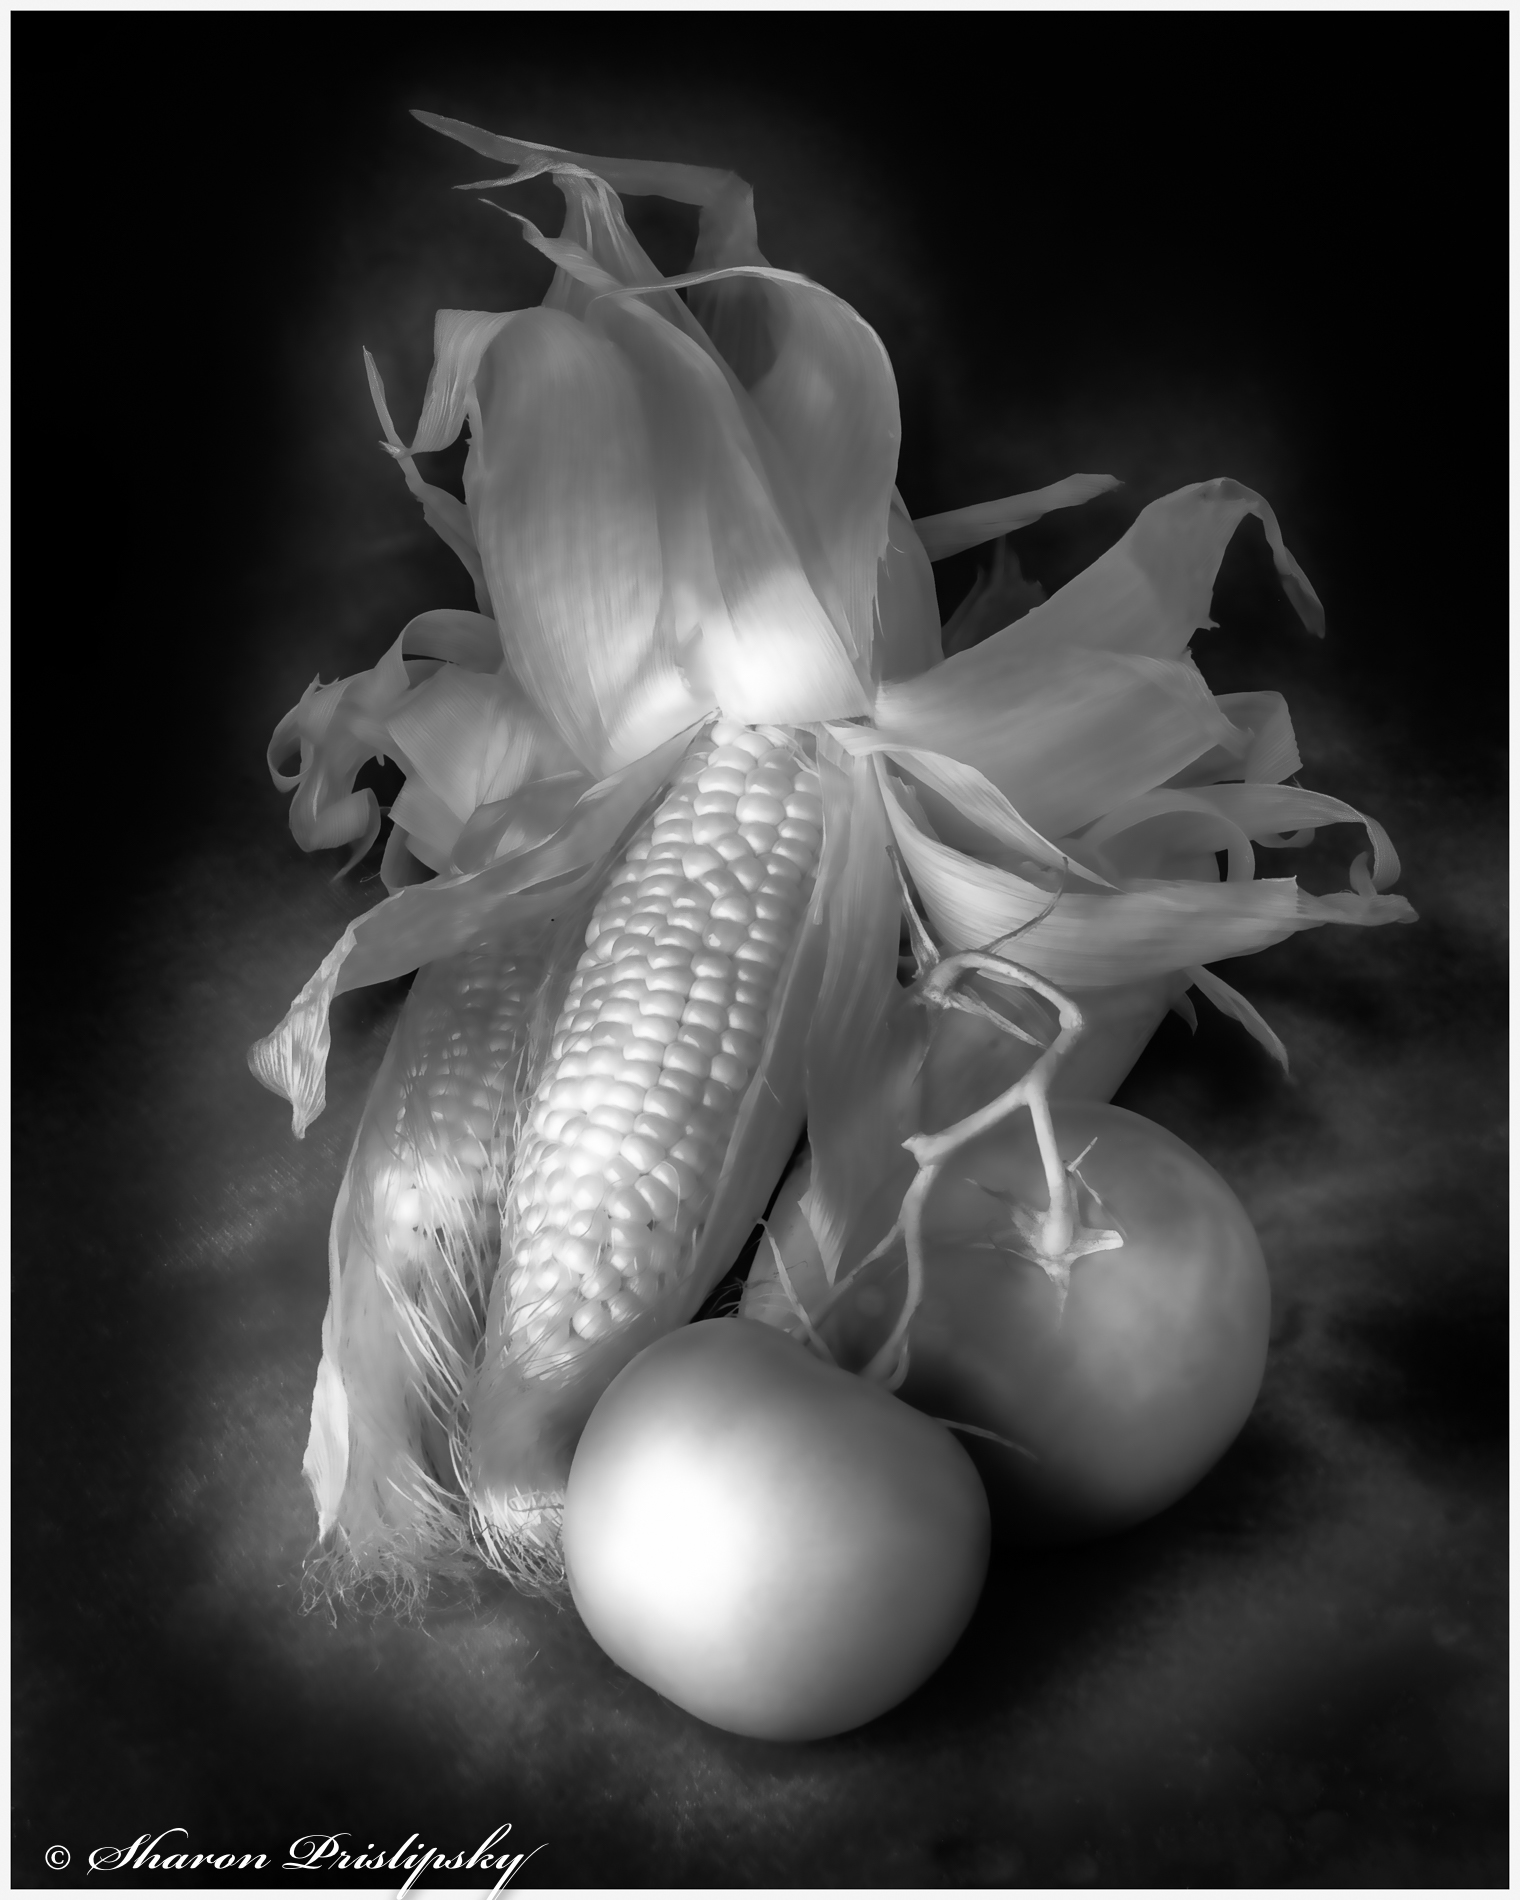 A Simple Harvest by Sharon Prislipsky, APSA, EPSA